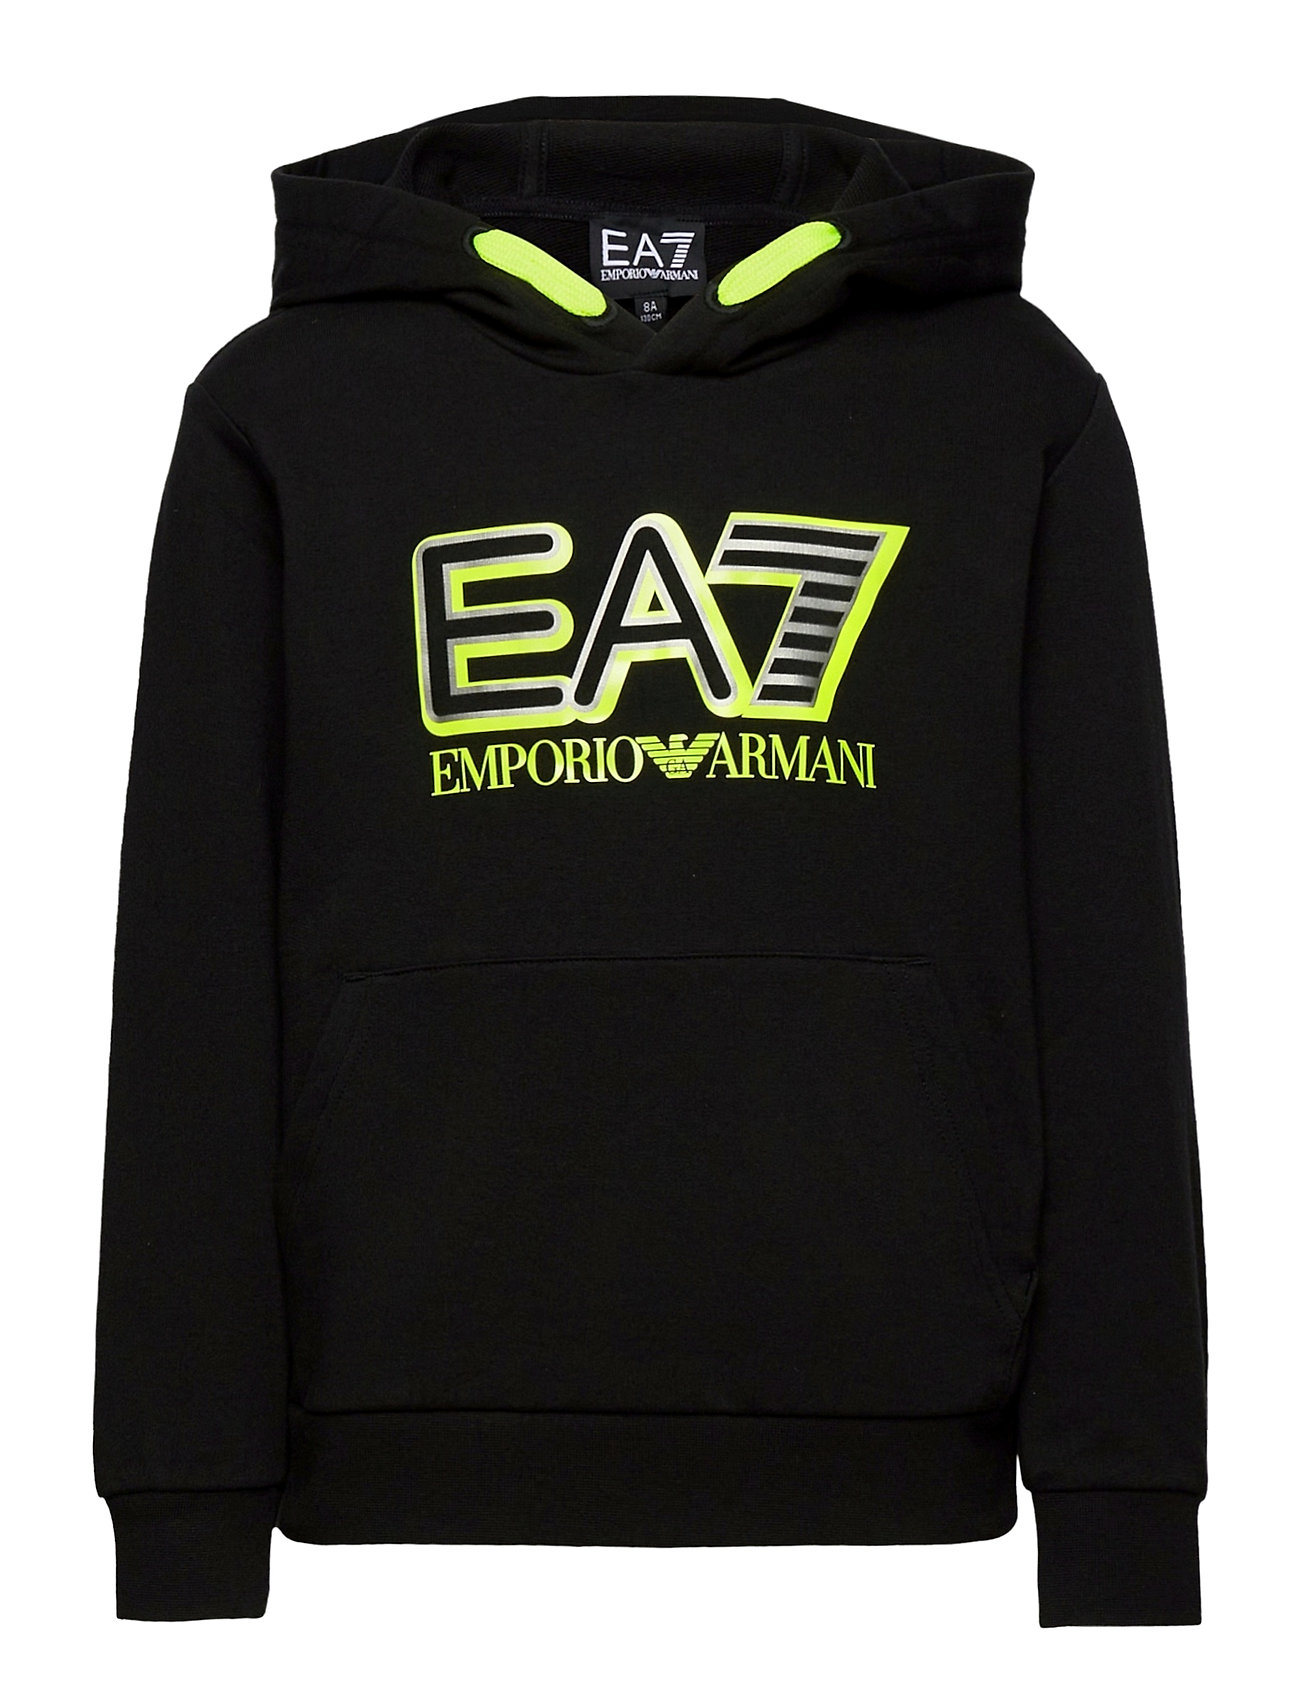 Destruktiv skrot Skim EA7 hoodies – Sweatshirt Hoodie Trøje Sort EA7 til børn i Sort - Pashion.dk